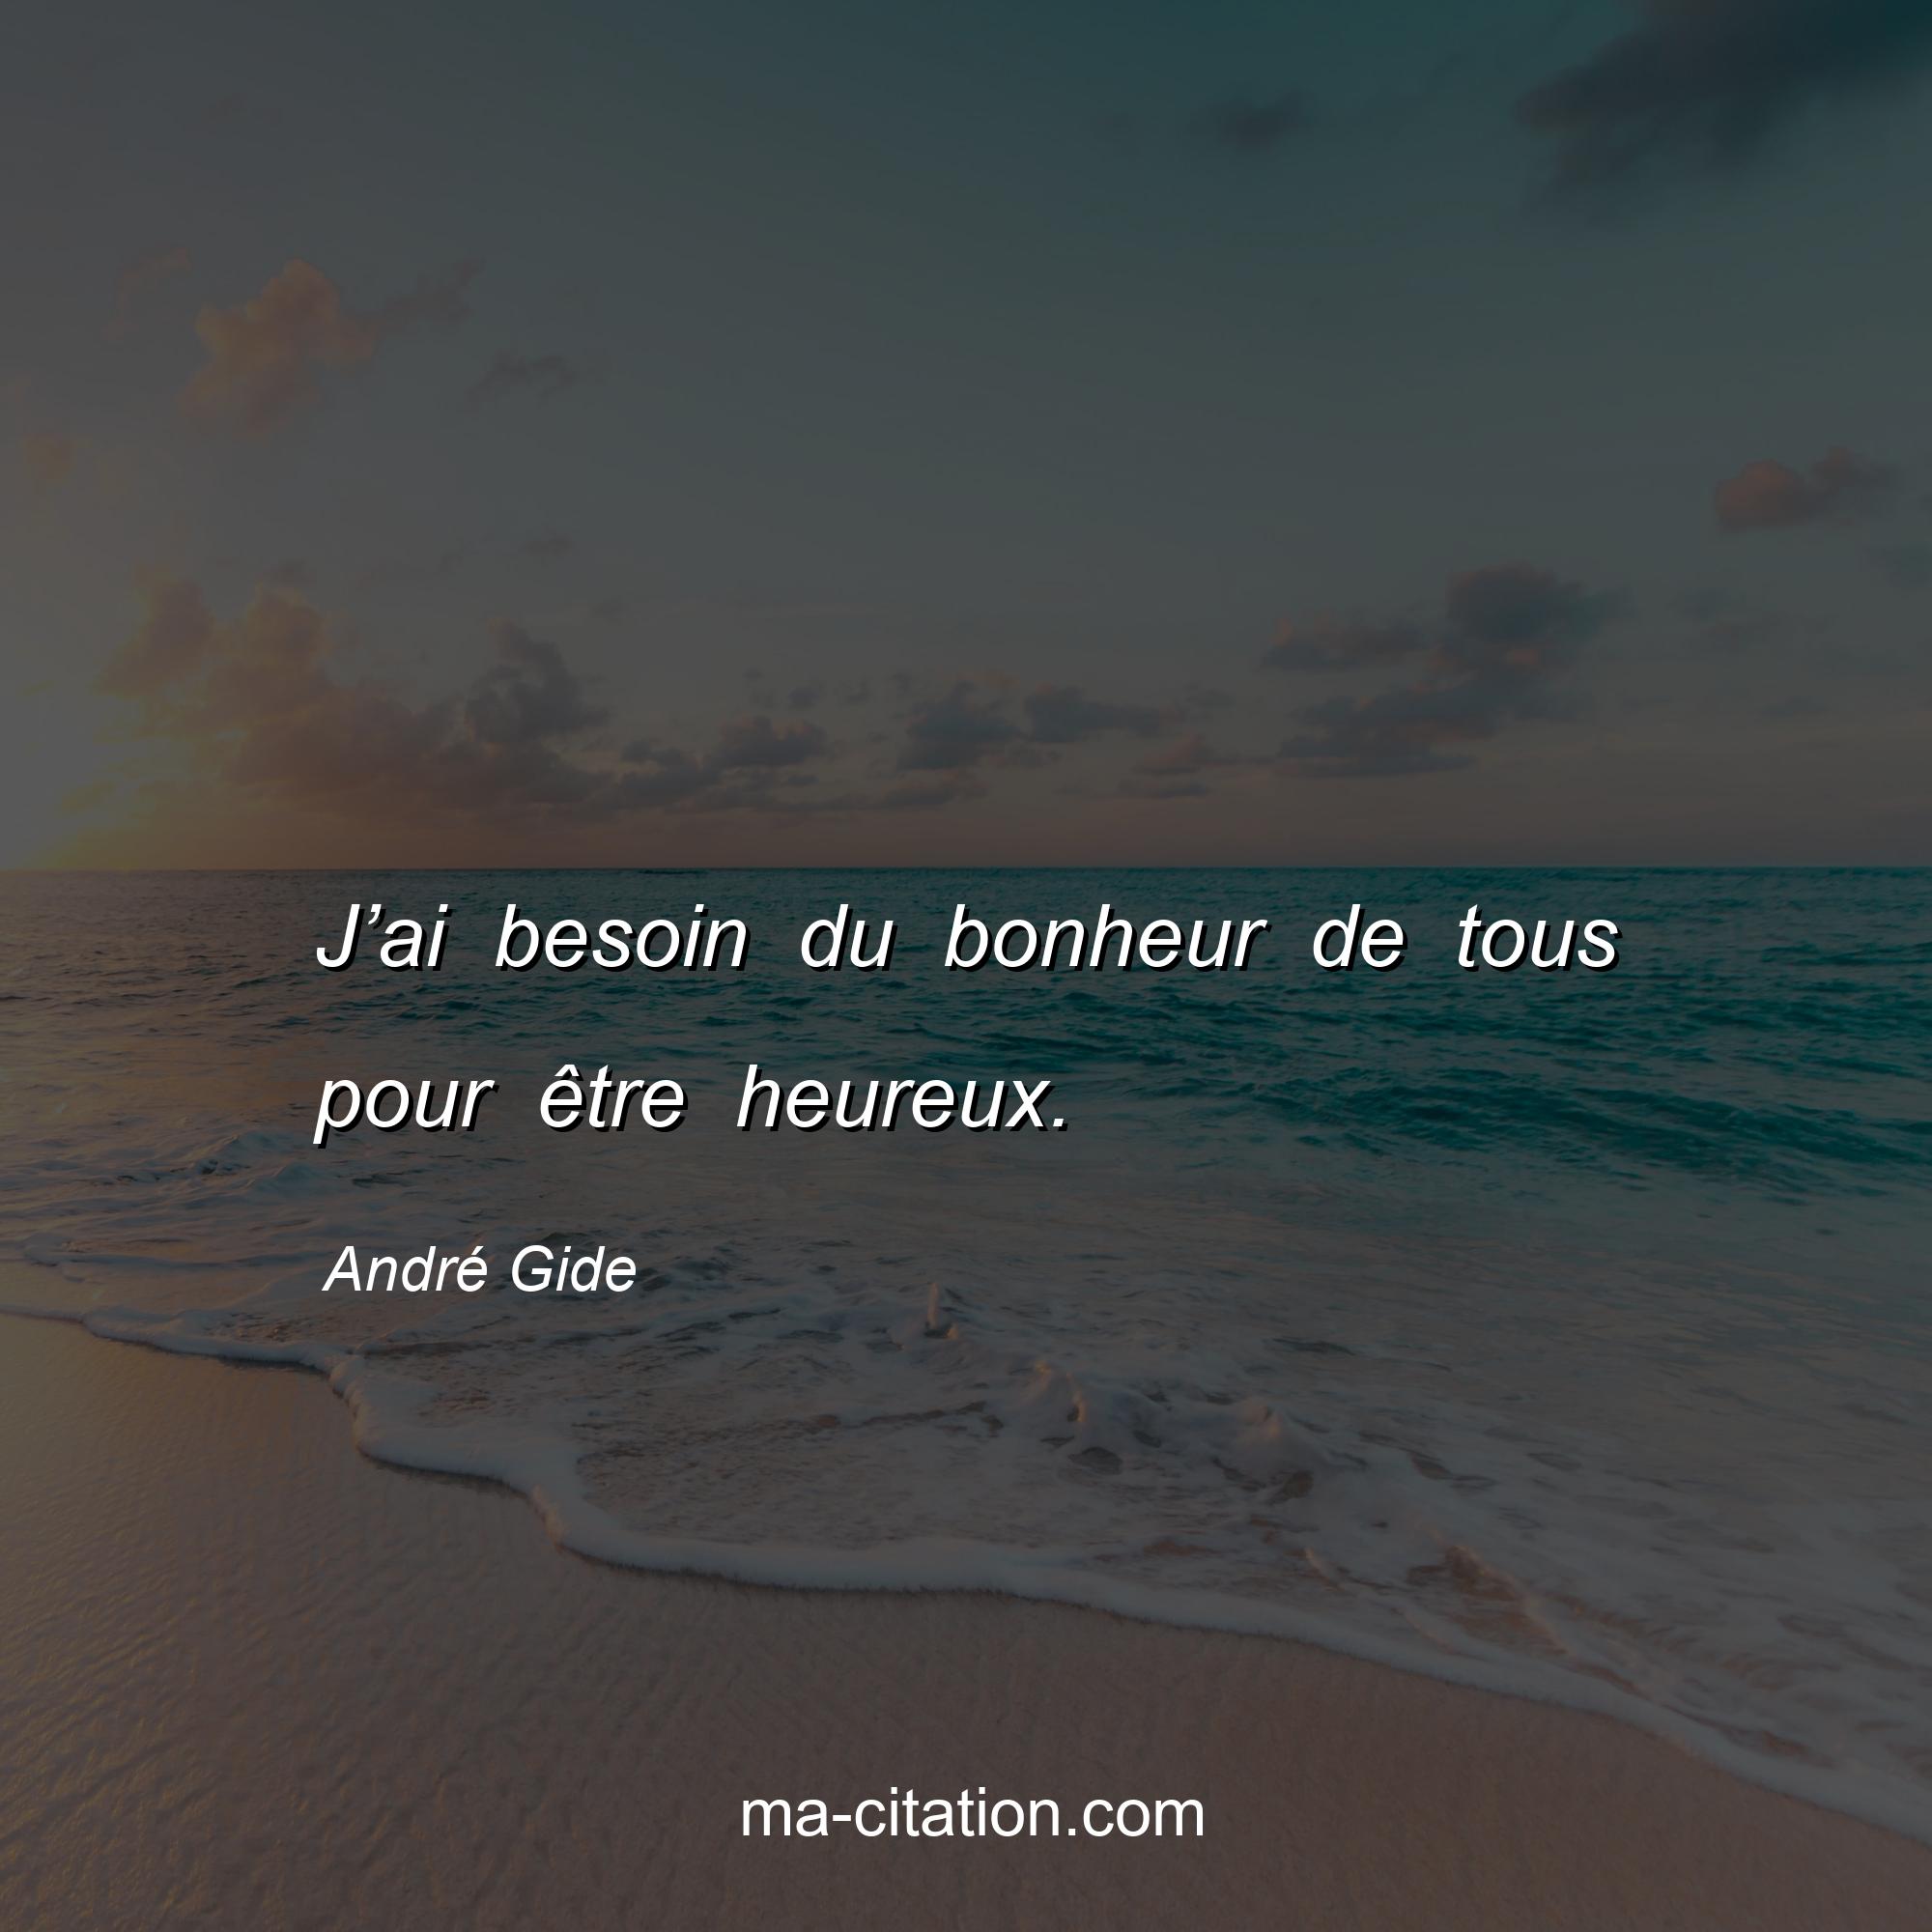 André Gide : J’ai besoin du bonheur de tous pour être heureux.